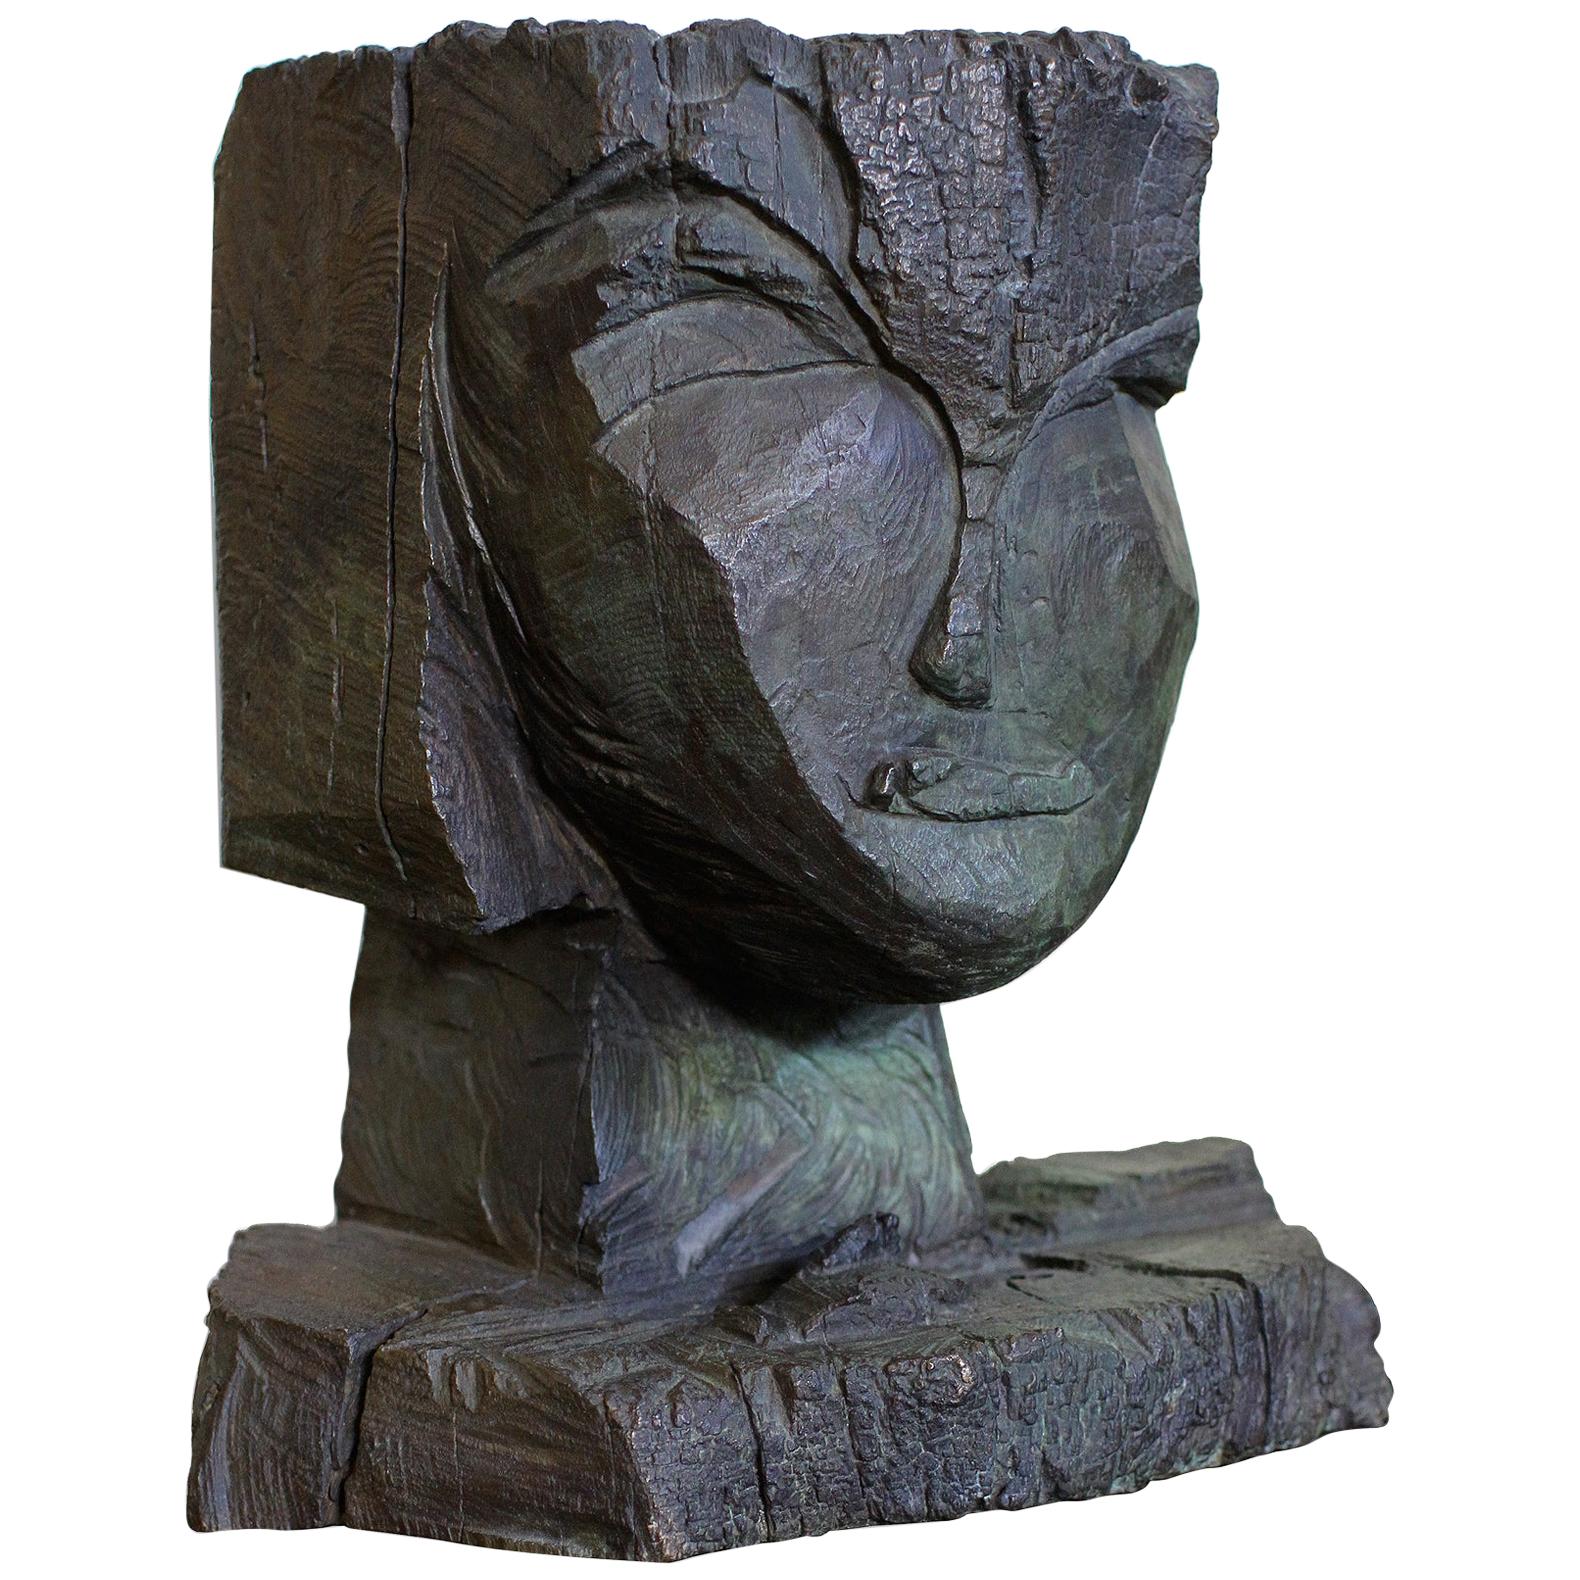 Dietrich Klinge Bronze Head